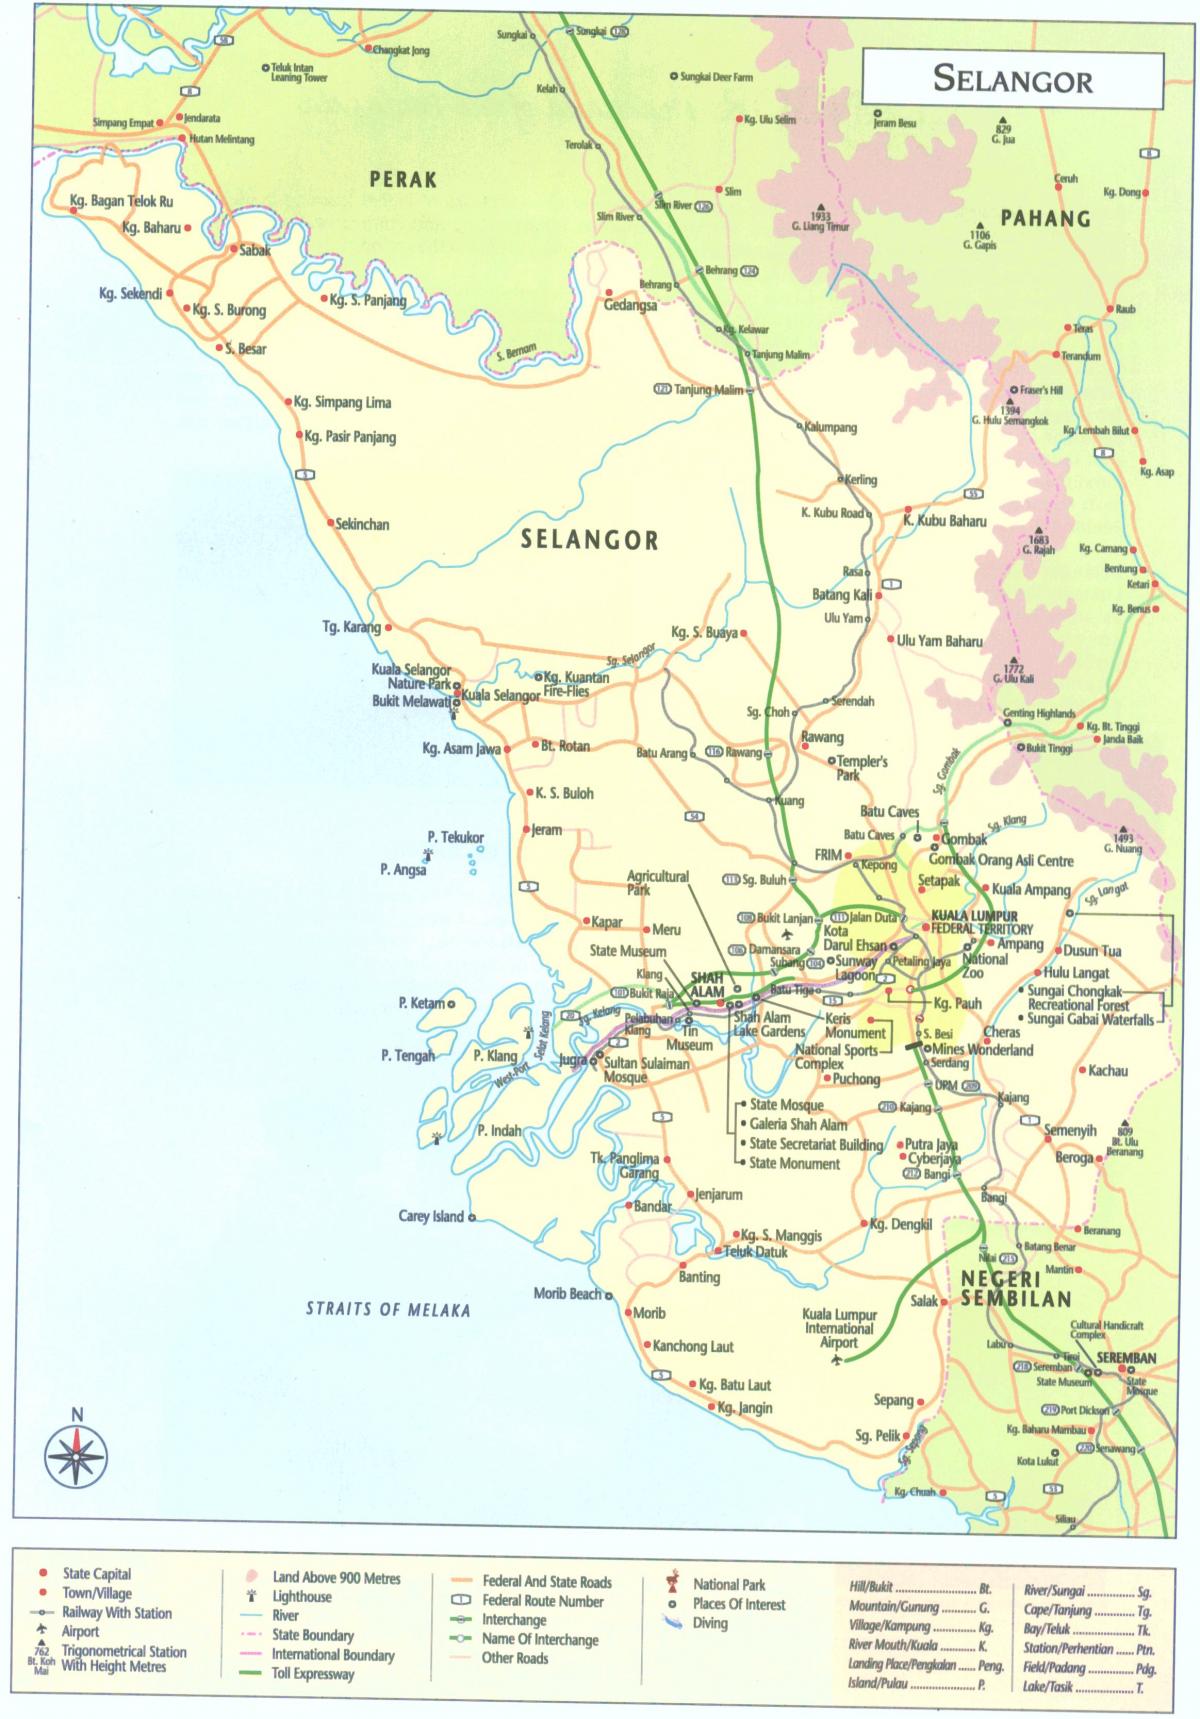 куала лумпур selangor мапа